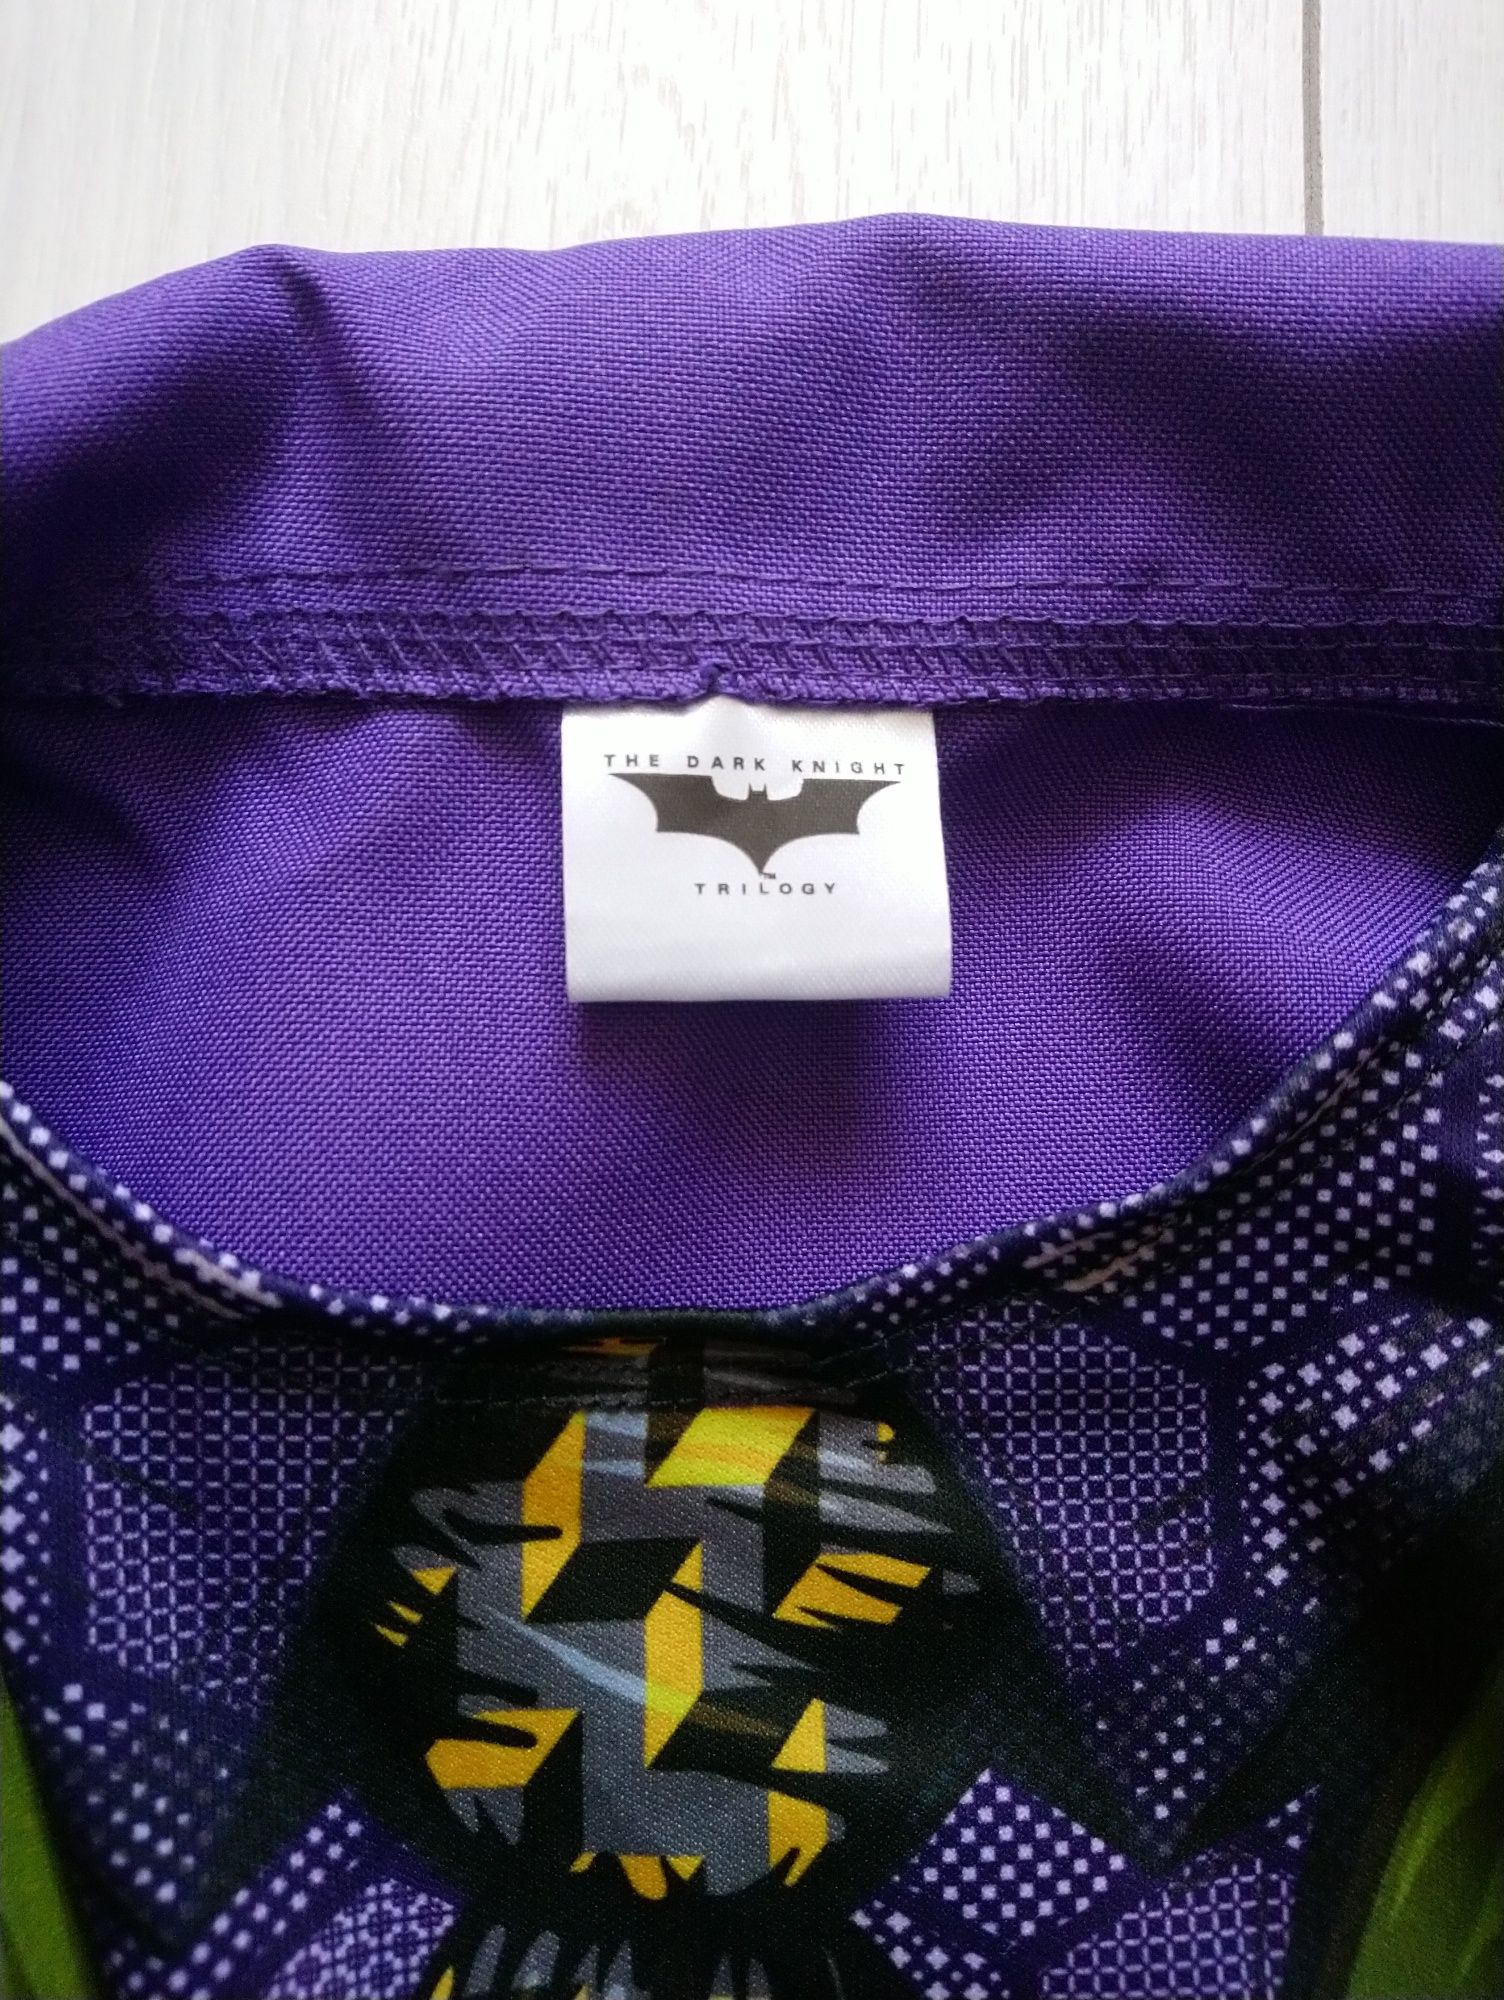 Джокер Бетман Joker Batman 8-10 років костюм